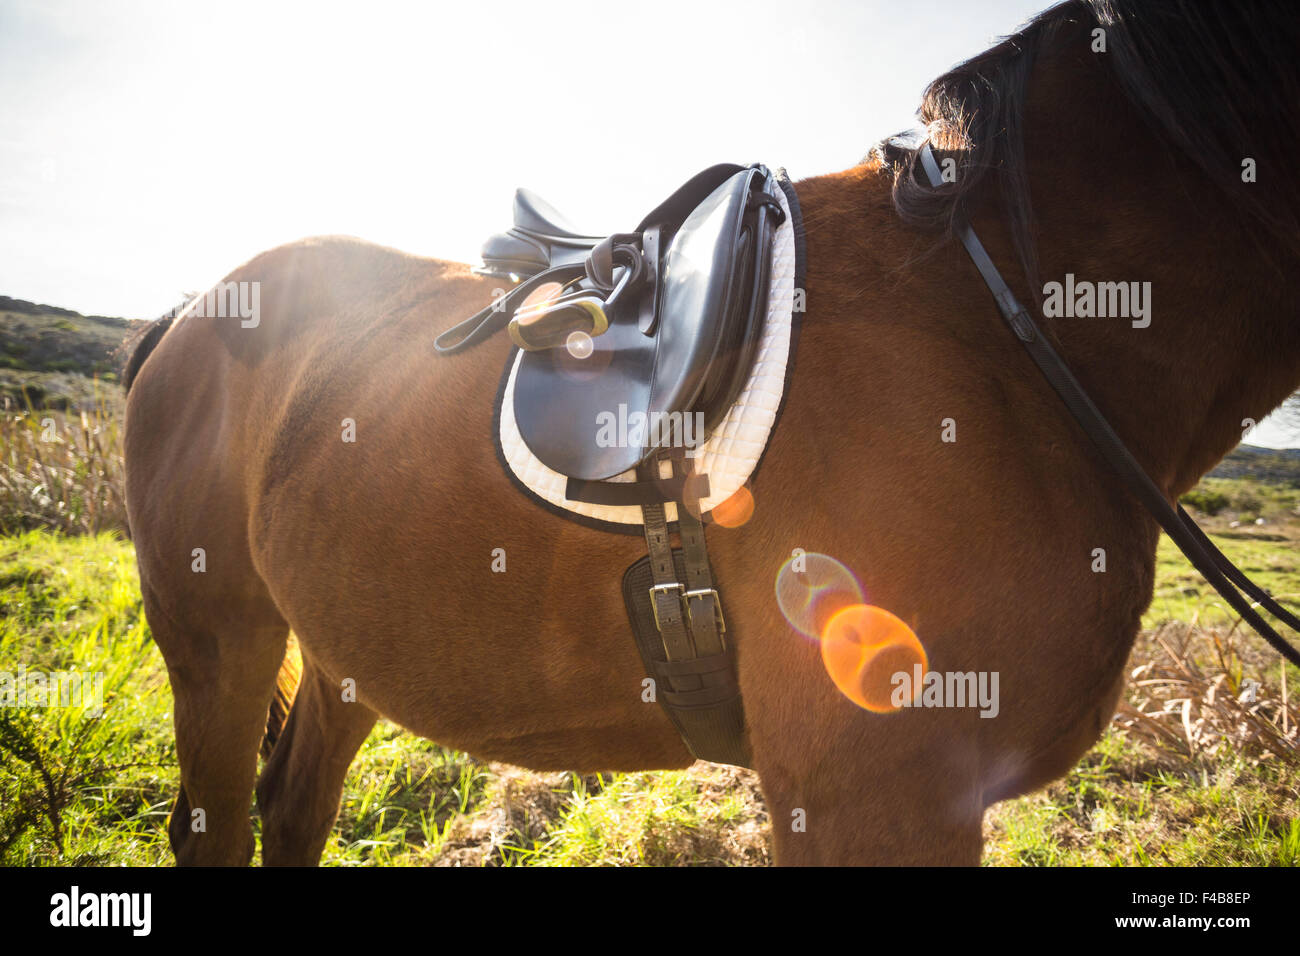 Thorough bred horse with saddle Stock Photo